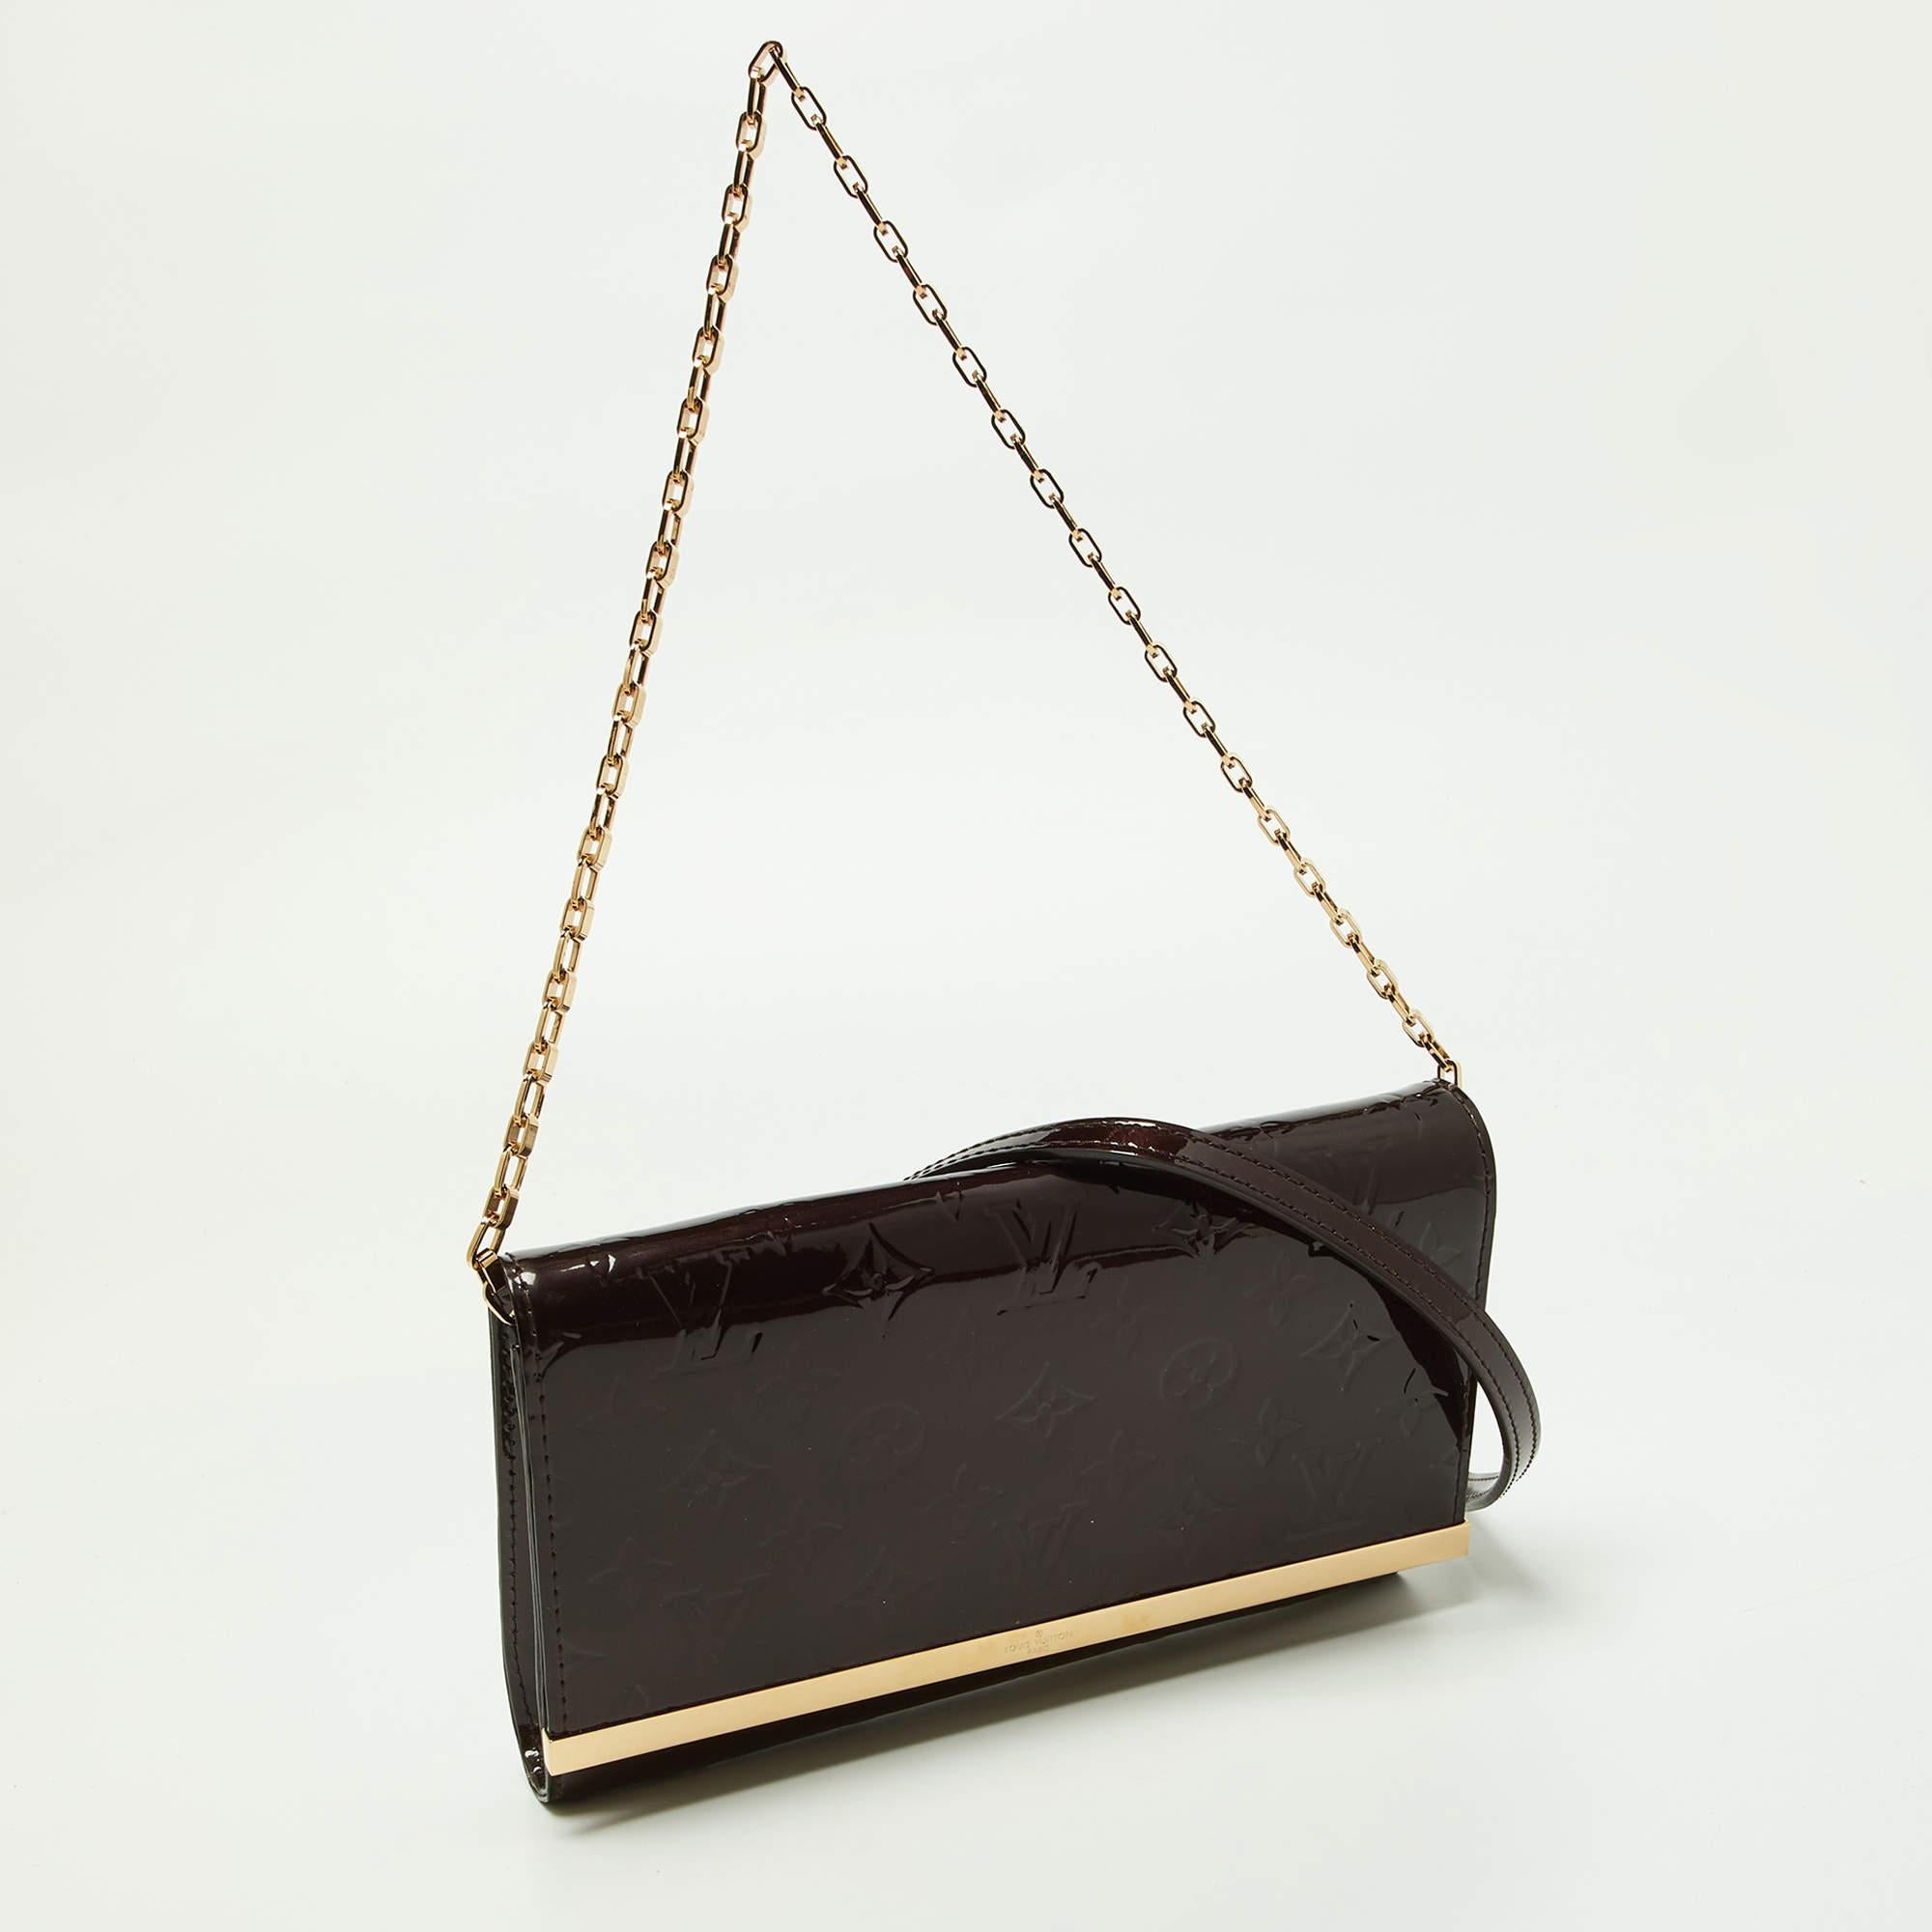 Louis Vuitton s'assure que vous disposez d'un merveilleux accessoire pour vous accompagner au quotidien avec ce sac bien confectionné. Il a un look caractéristique et une taille pratique.

